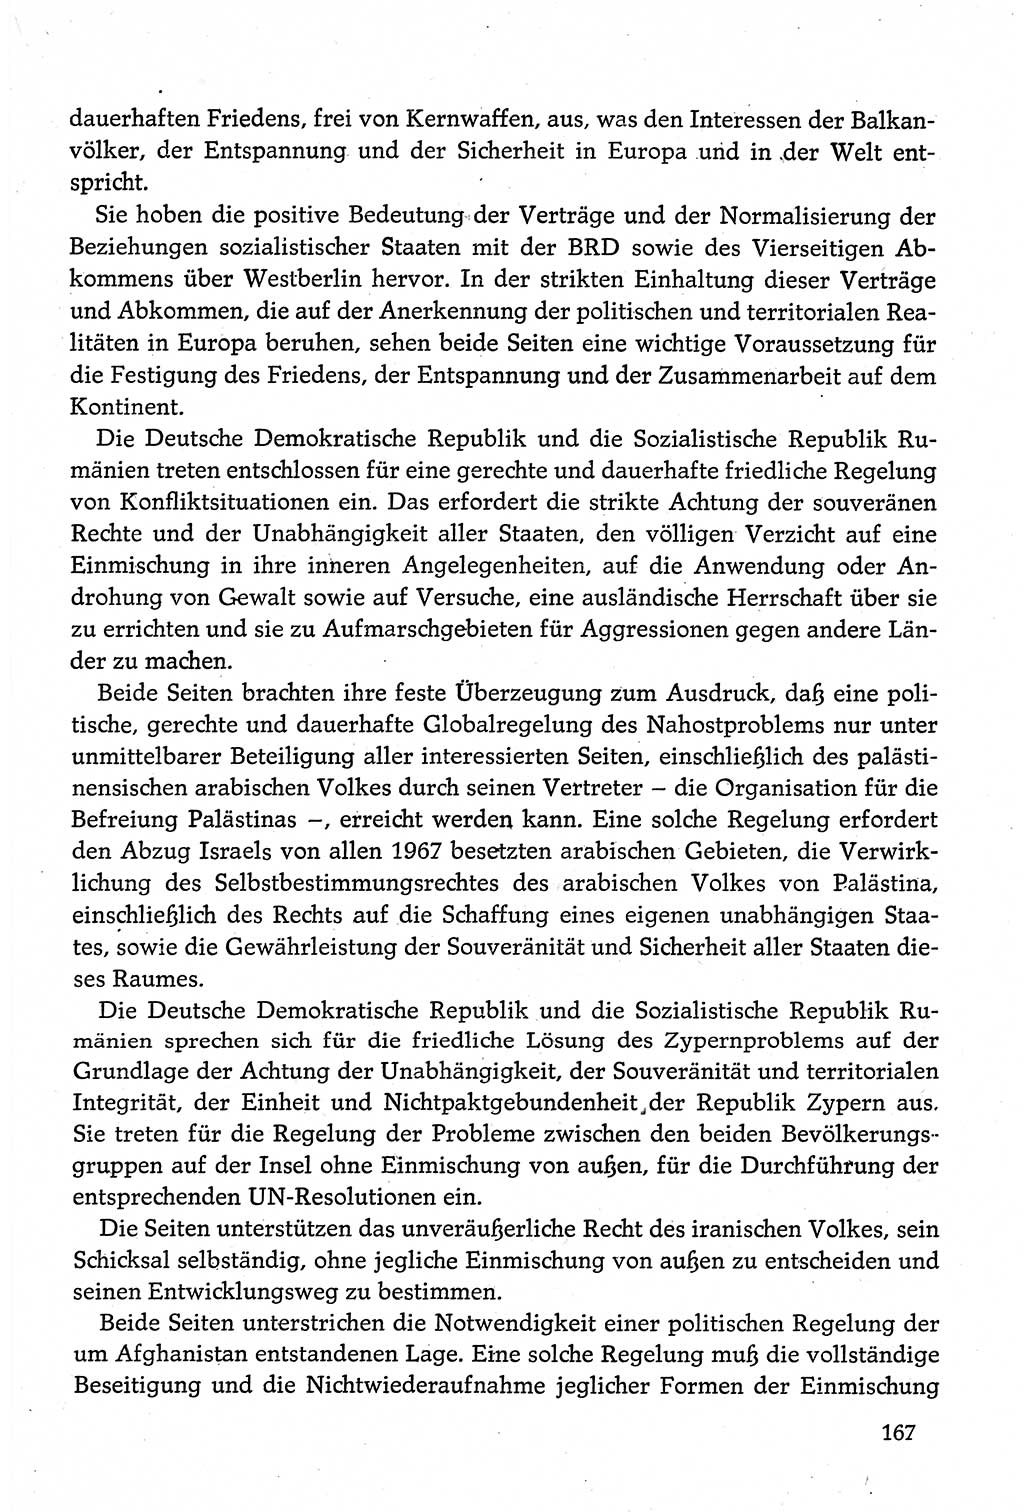 Dokumente der Sozialistischen Einheitspartei Deutschlands (SED) [Deutsche Demokratische Republik (DDR)] 1980-1981, Seite 167 (Dok. SED DDR 1980-1981, S. 167)